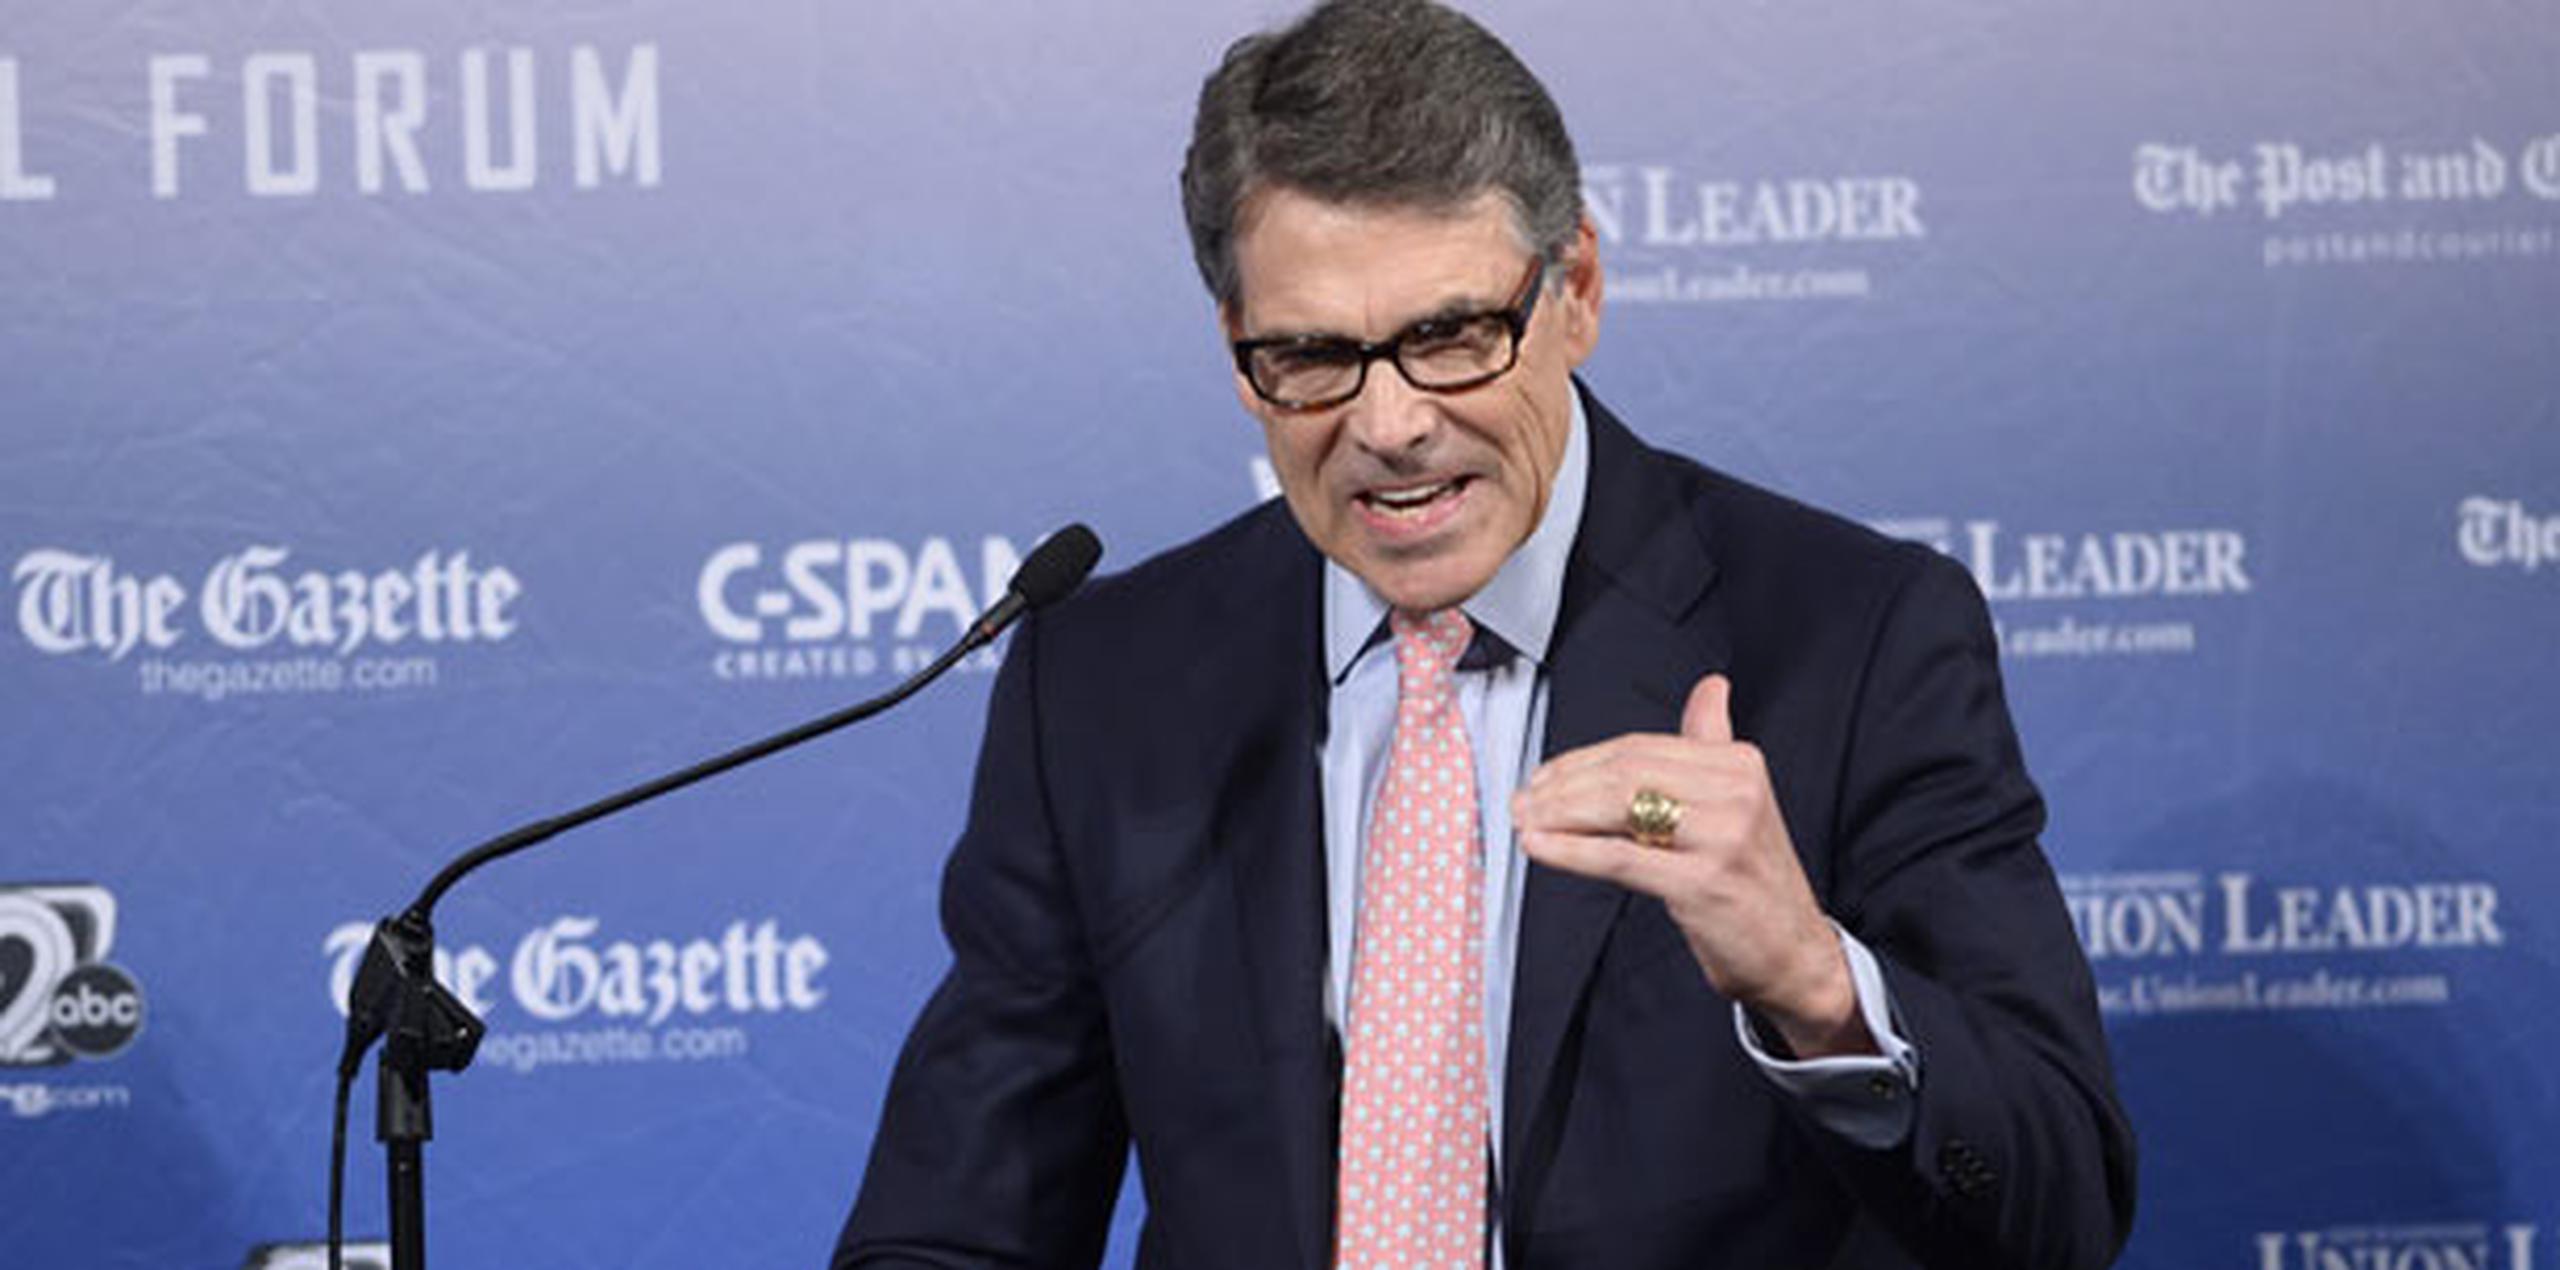 Rick Perry, exgobernador de Texas, señaló que el flujo de inmigrantes es "una herida grave". (AFP)